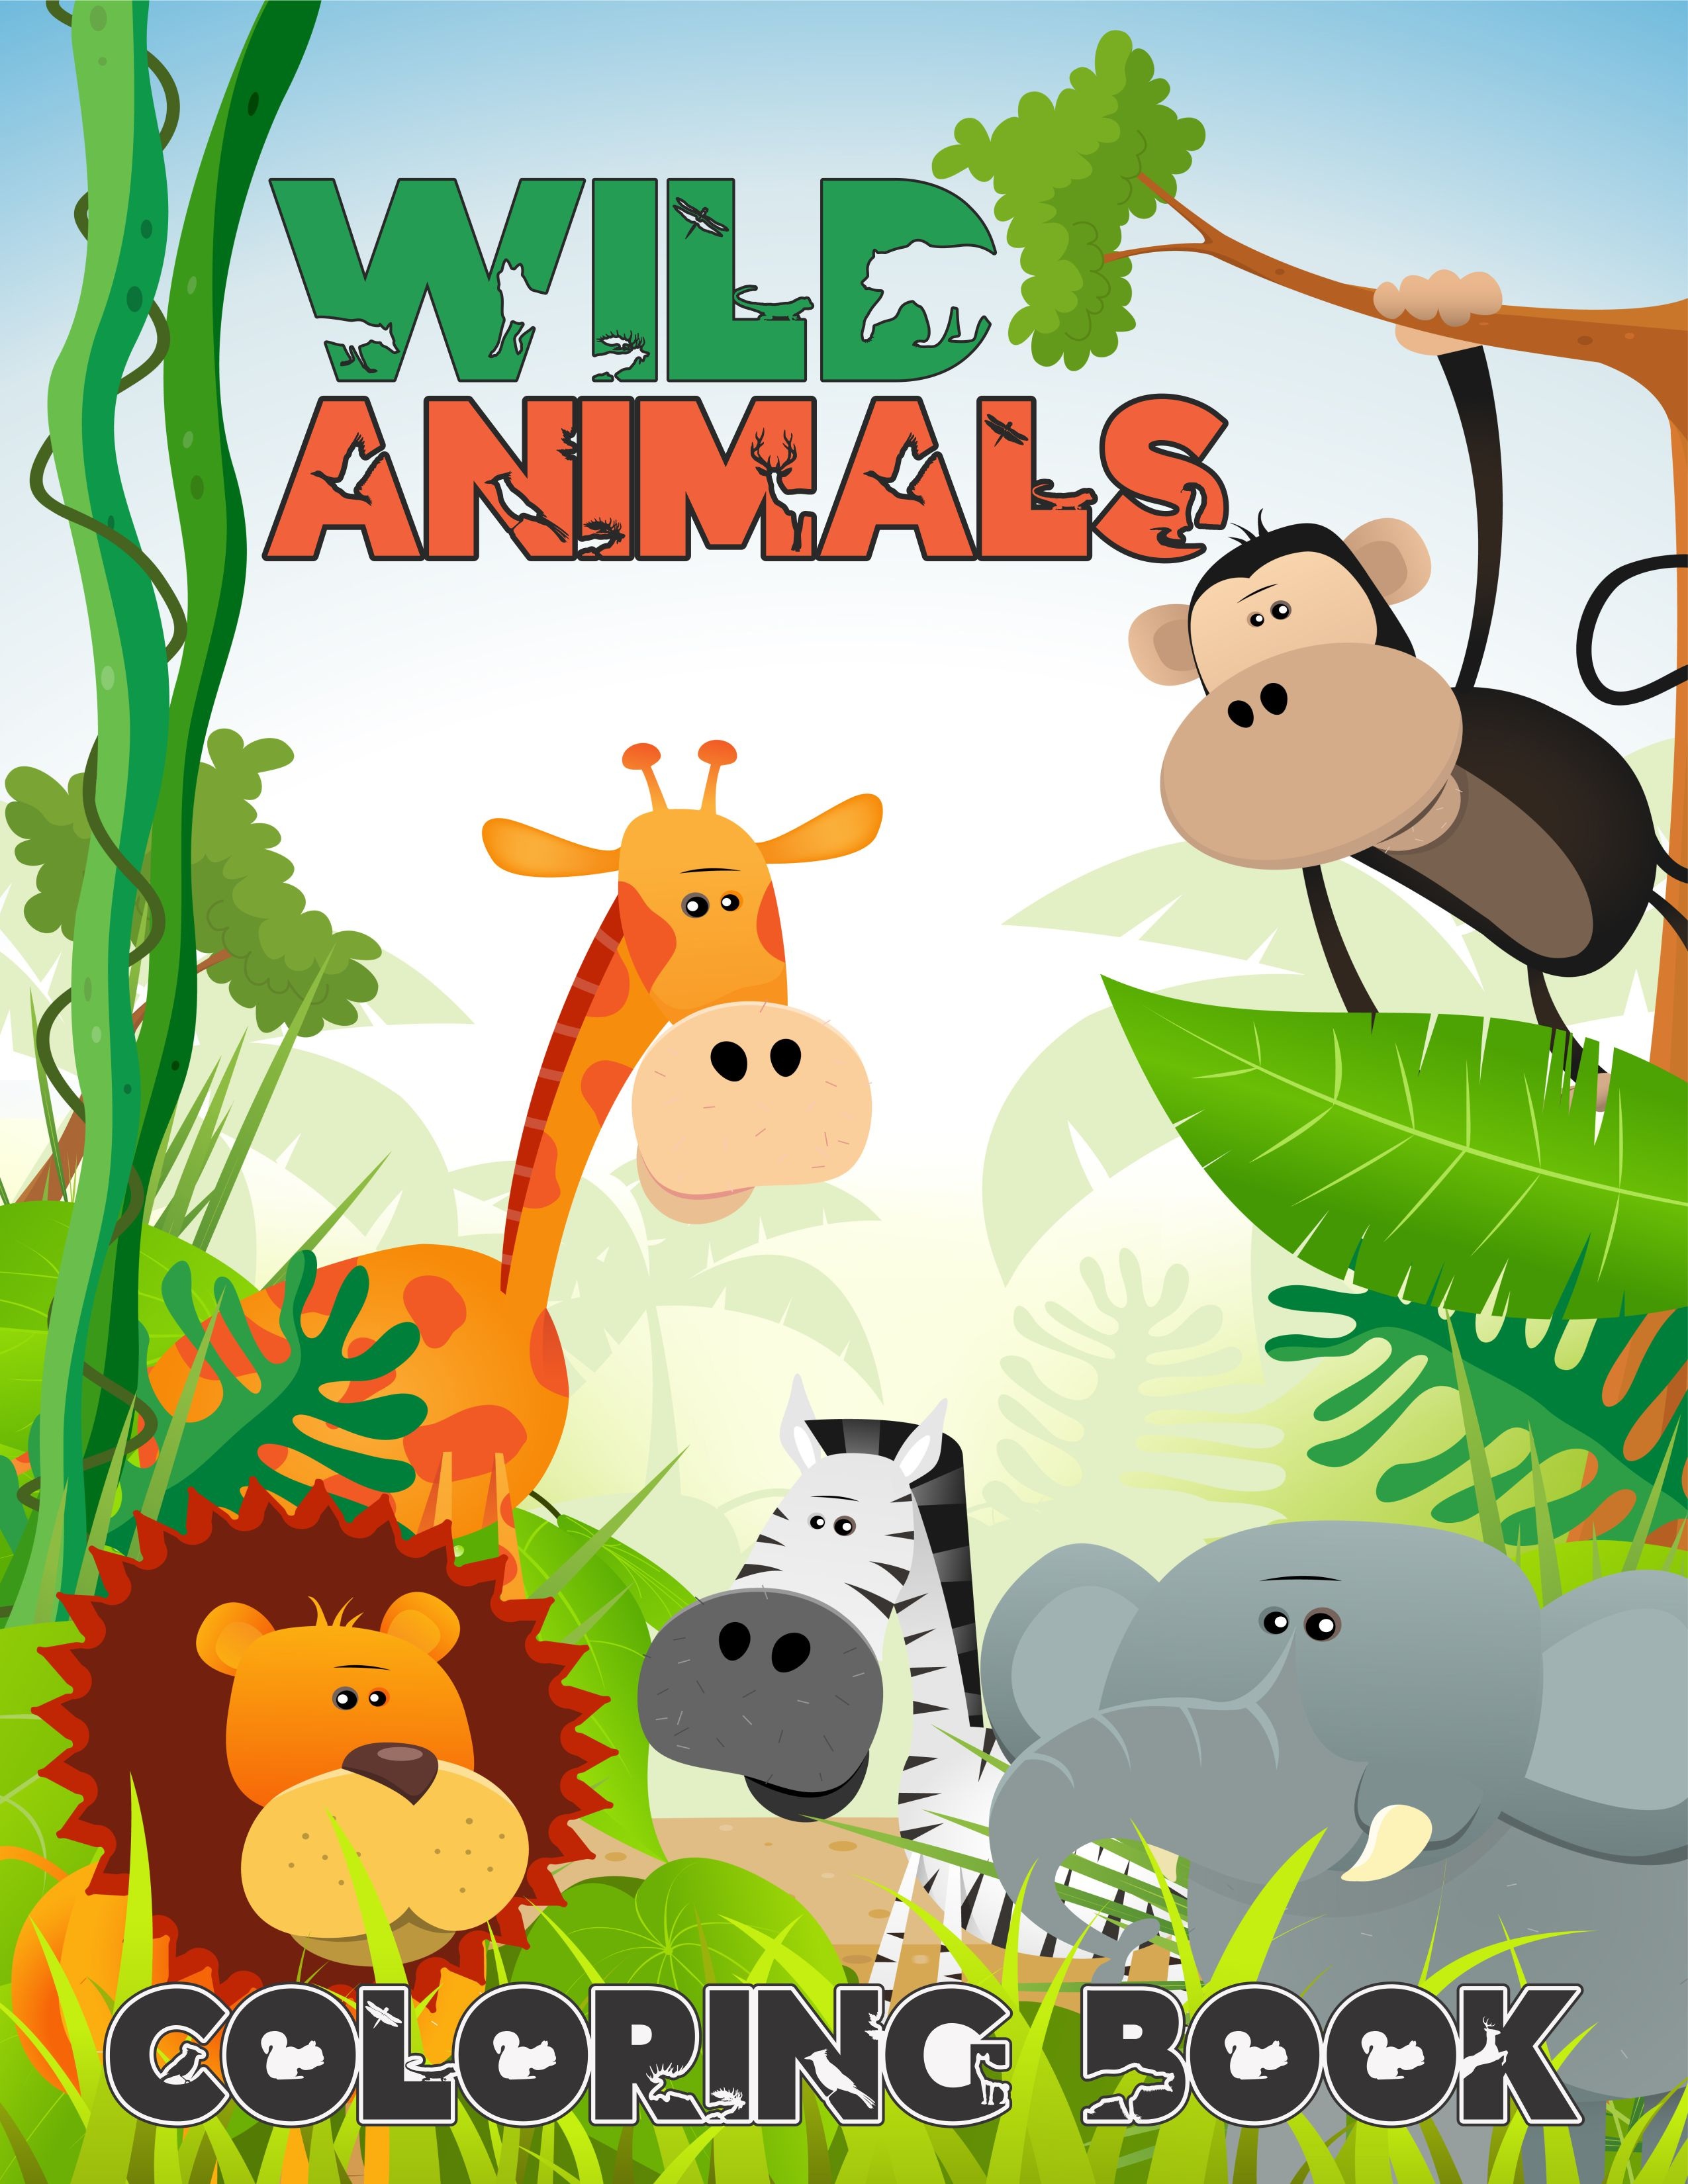 Wild Animals 